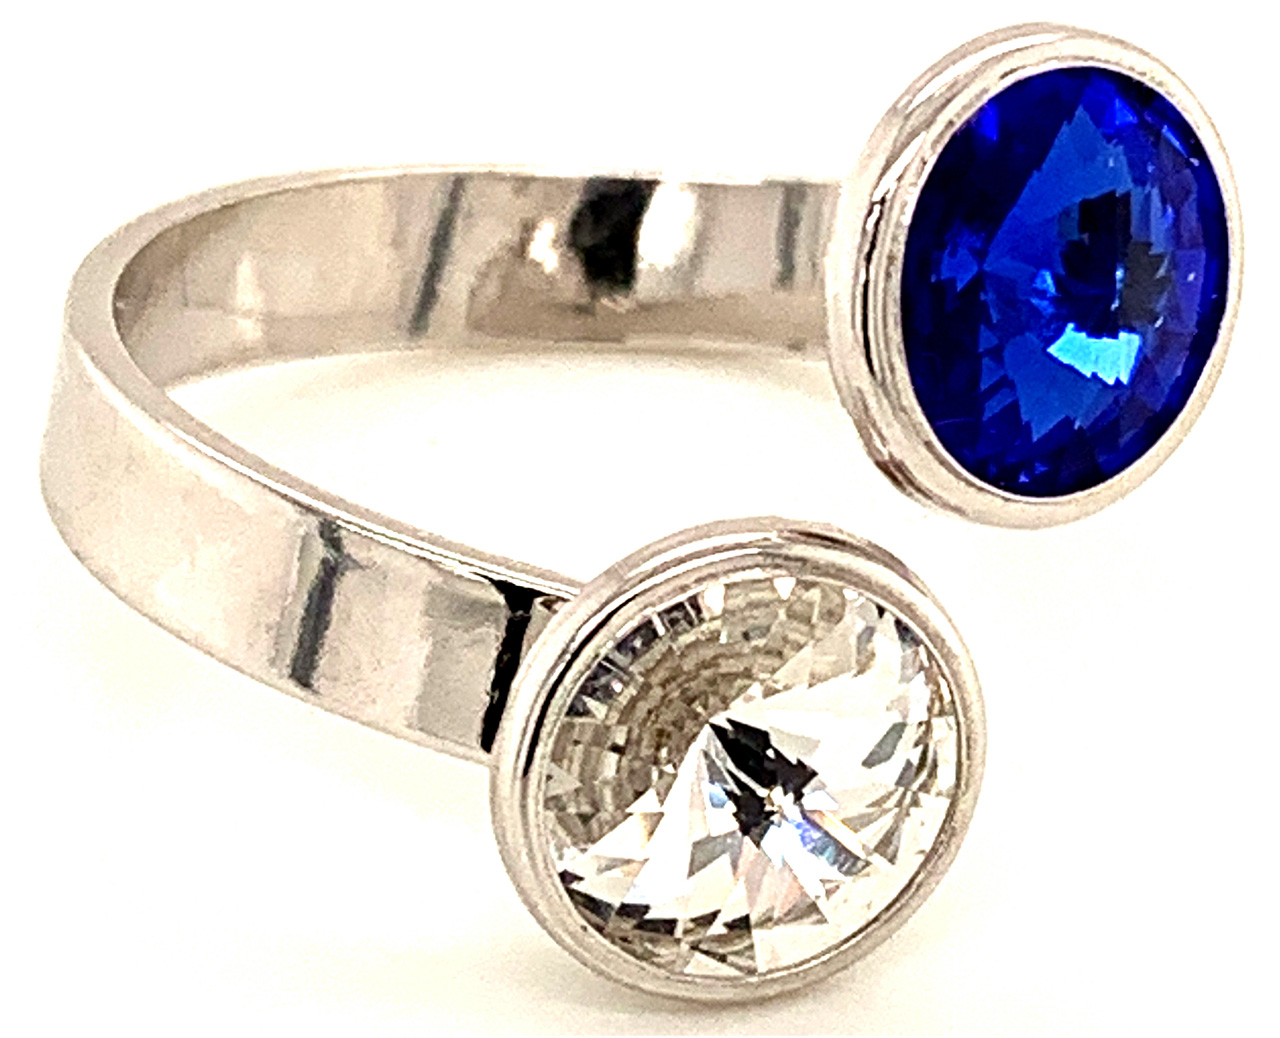 Silber Ring mit 2 Swarovski Crystal 1*Majestic Blue Blau 1*Crystal Clear 925 Silberfassung größe änderbar gesamt ca. 3,4 Gramm 17 ct handgearbeitet, rhodiniert, handgemacht in Italien AT0578MBC